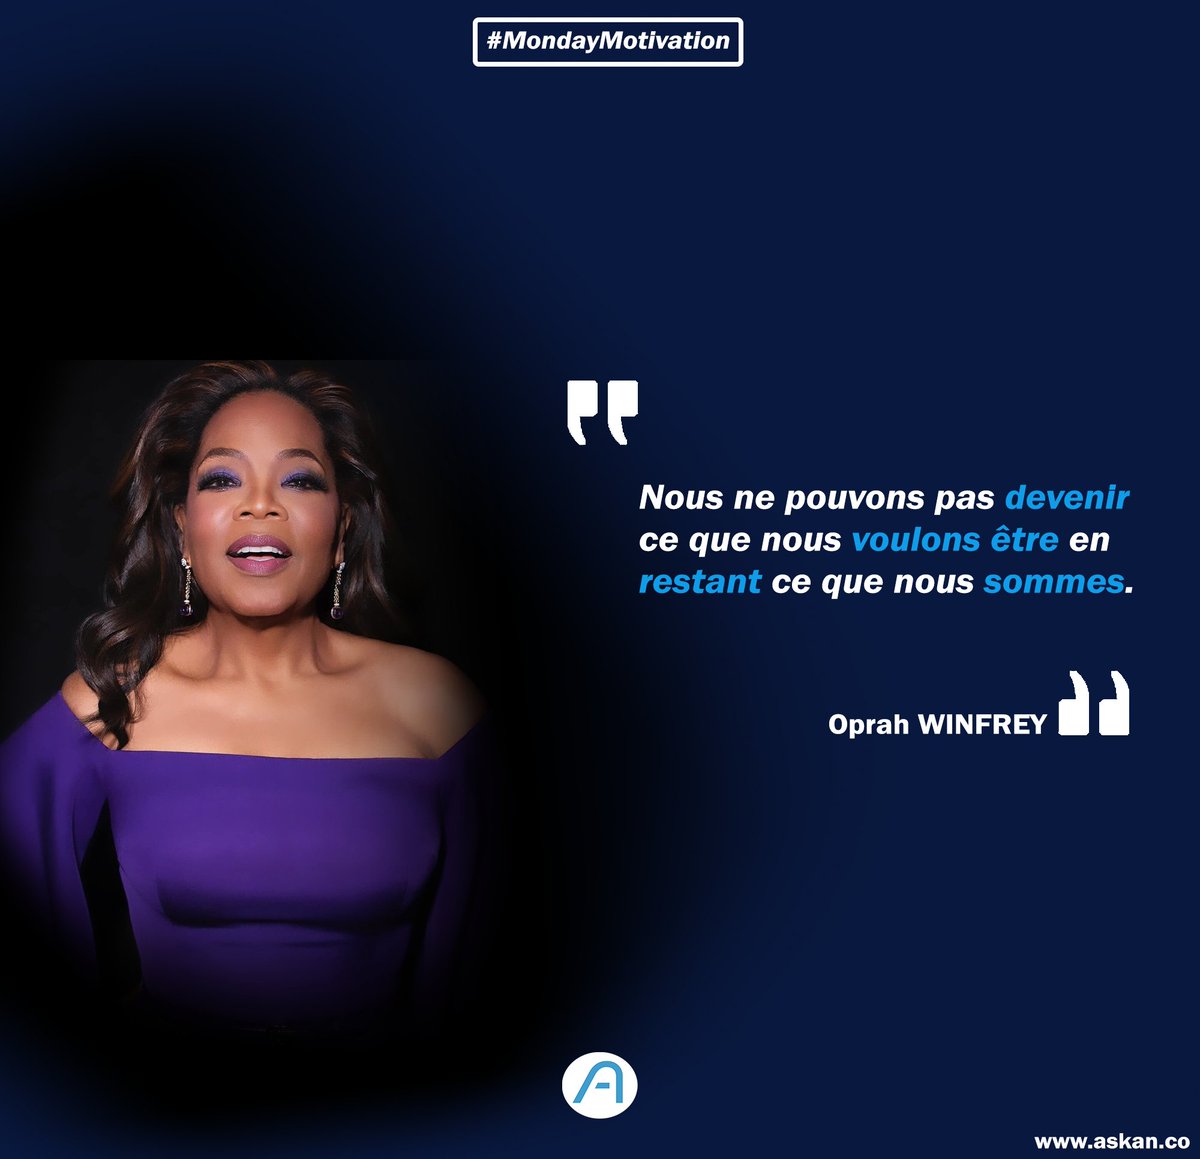 Bon début de semaine à tous ! Voici une citation d'Oprah Winfrey qui devrait en motiver beaucoup. 🗣️ . La première étape pour atteindre vos objectifs est d'adopter une attitude de changement. Sortez de votre zone de confort et challengez vous !